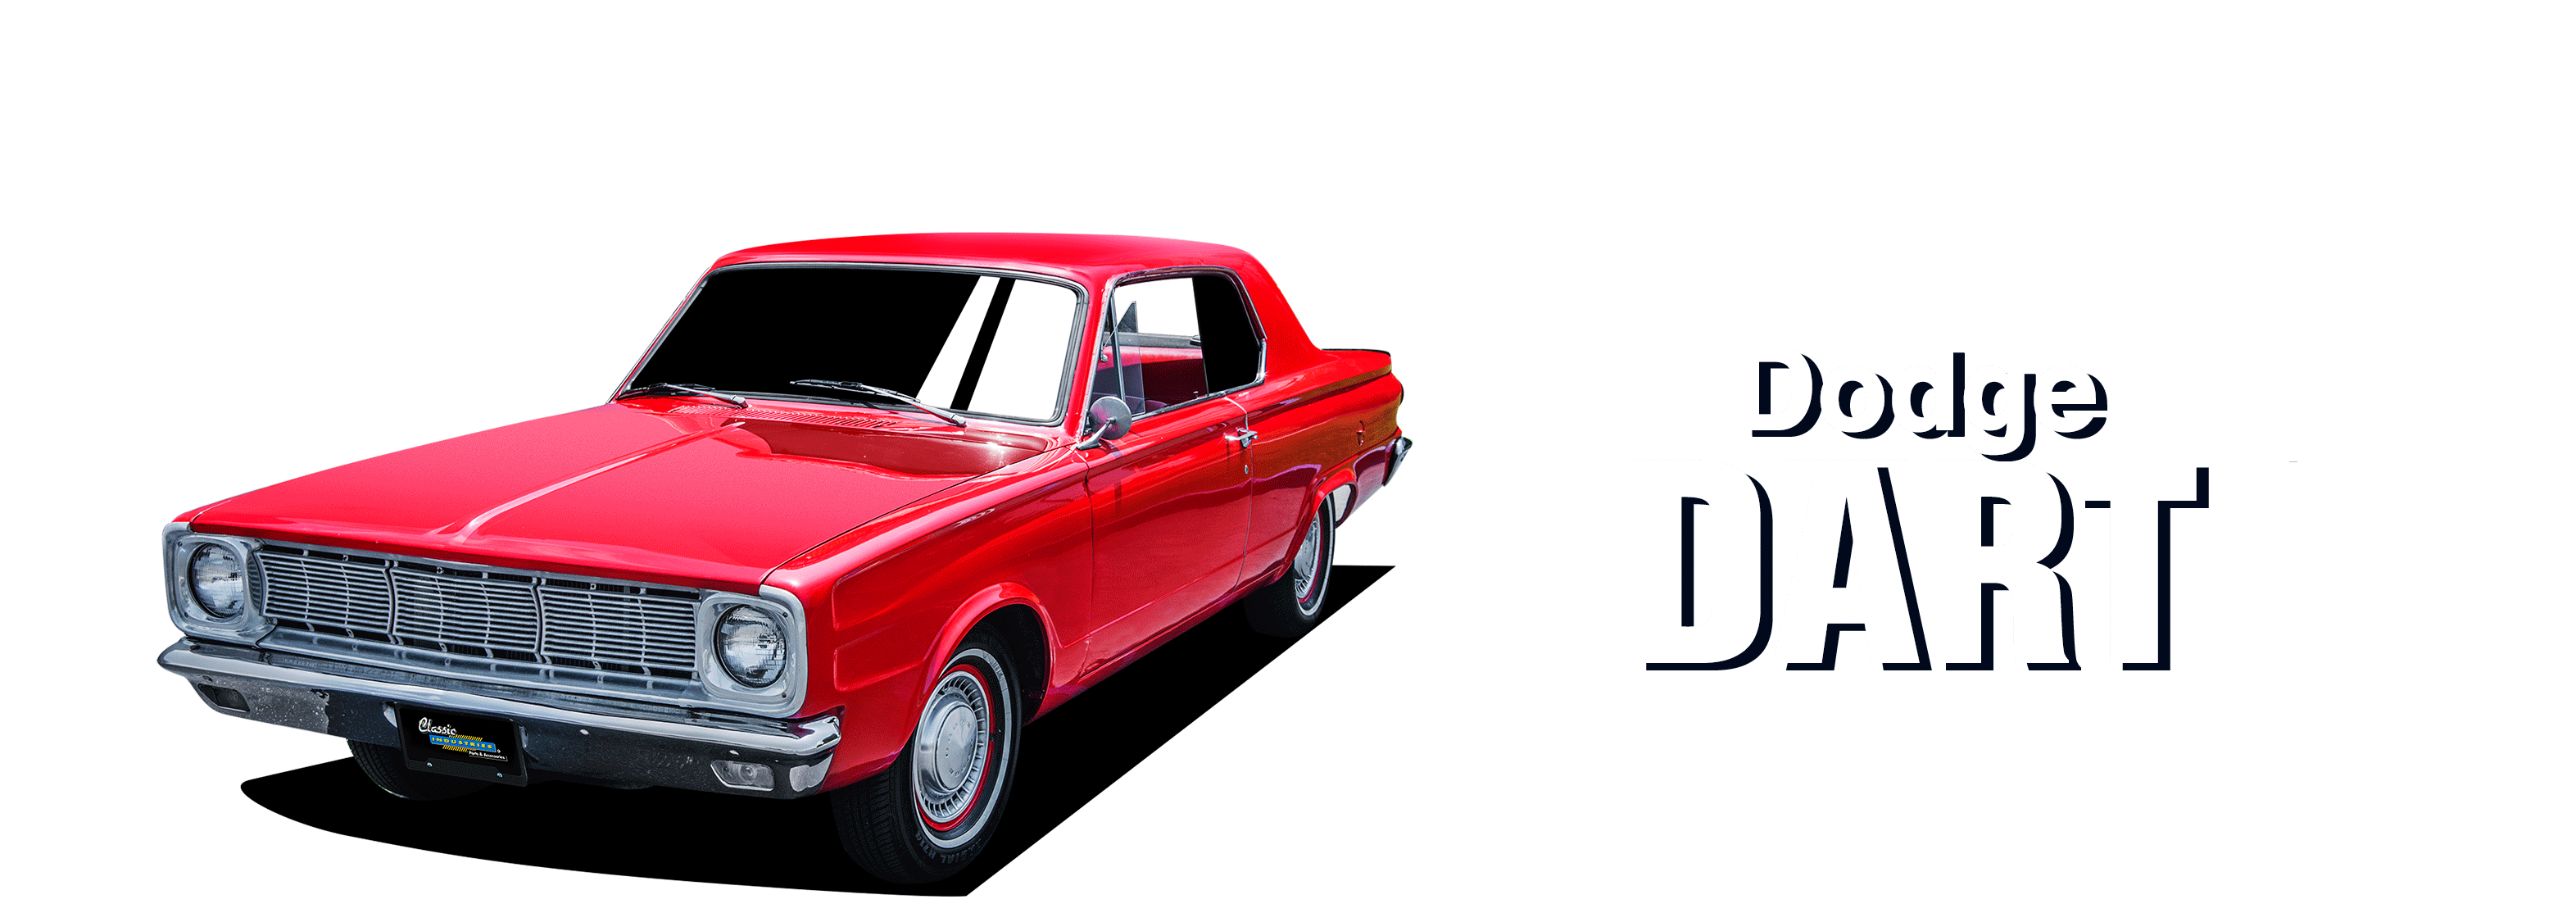 Dodge-Dart-vehicle-desktop-2023-1